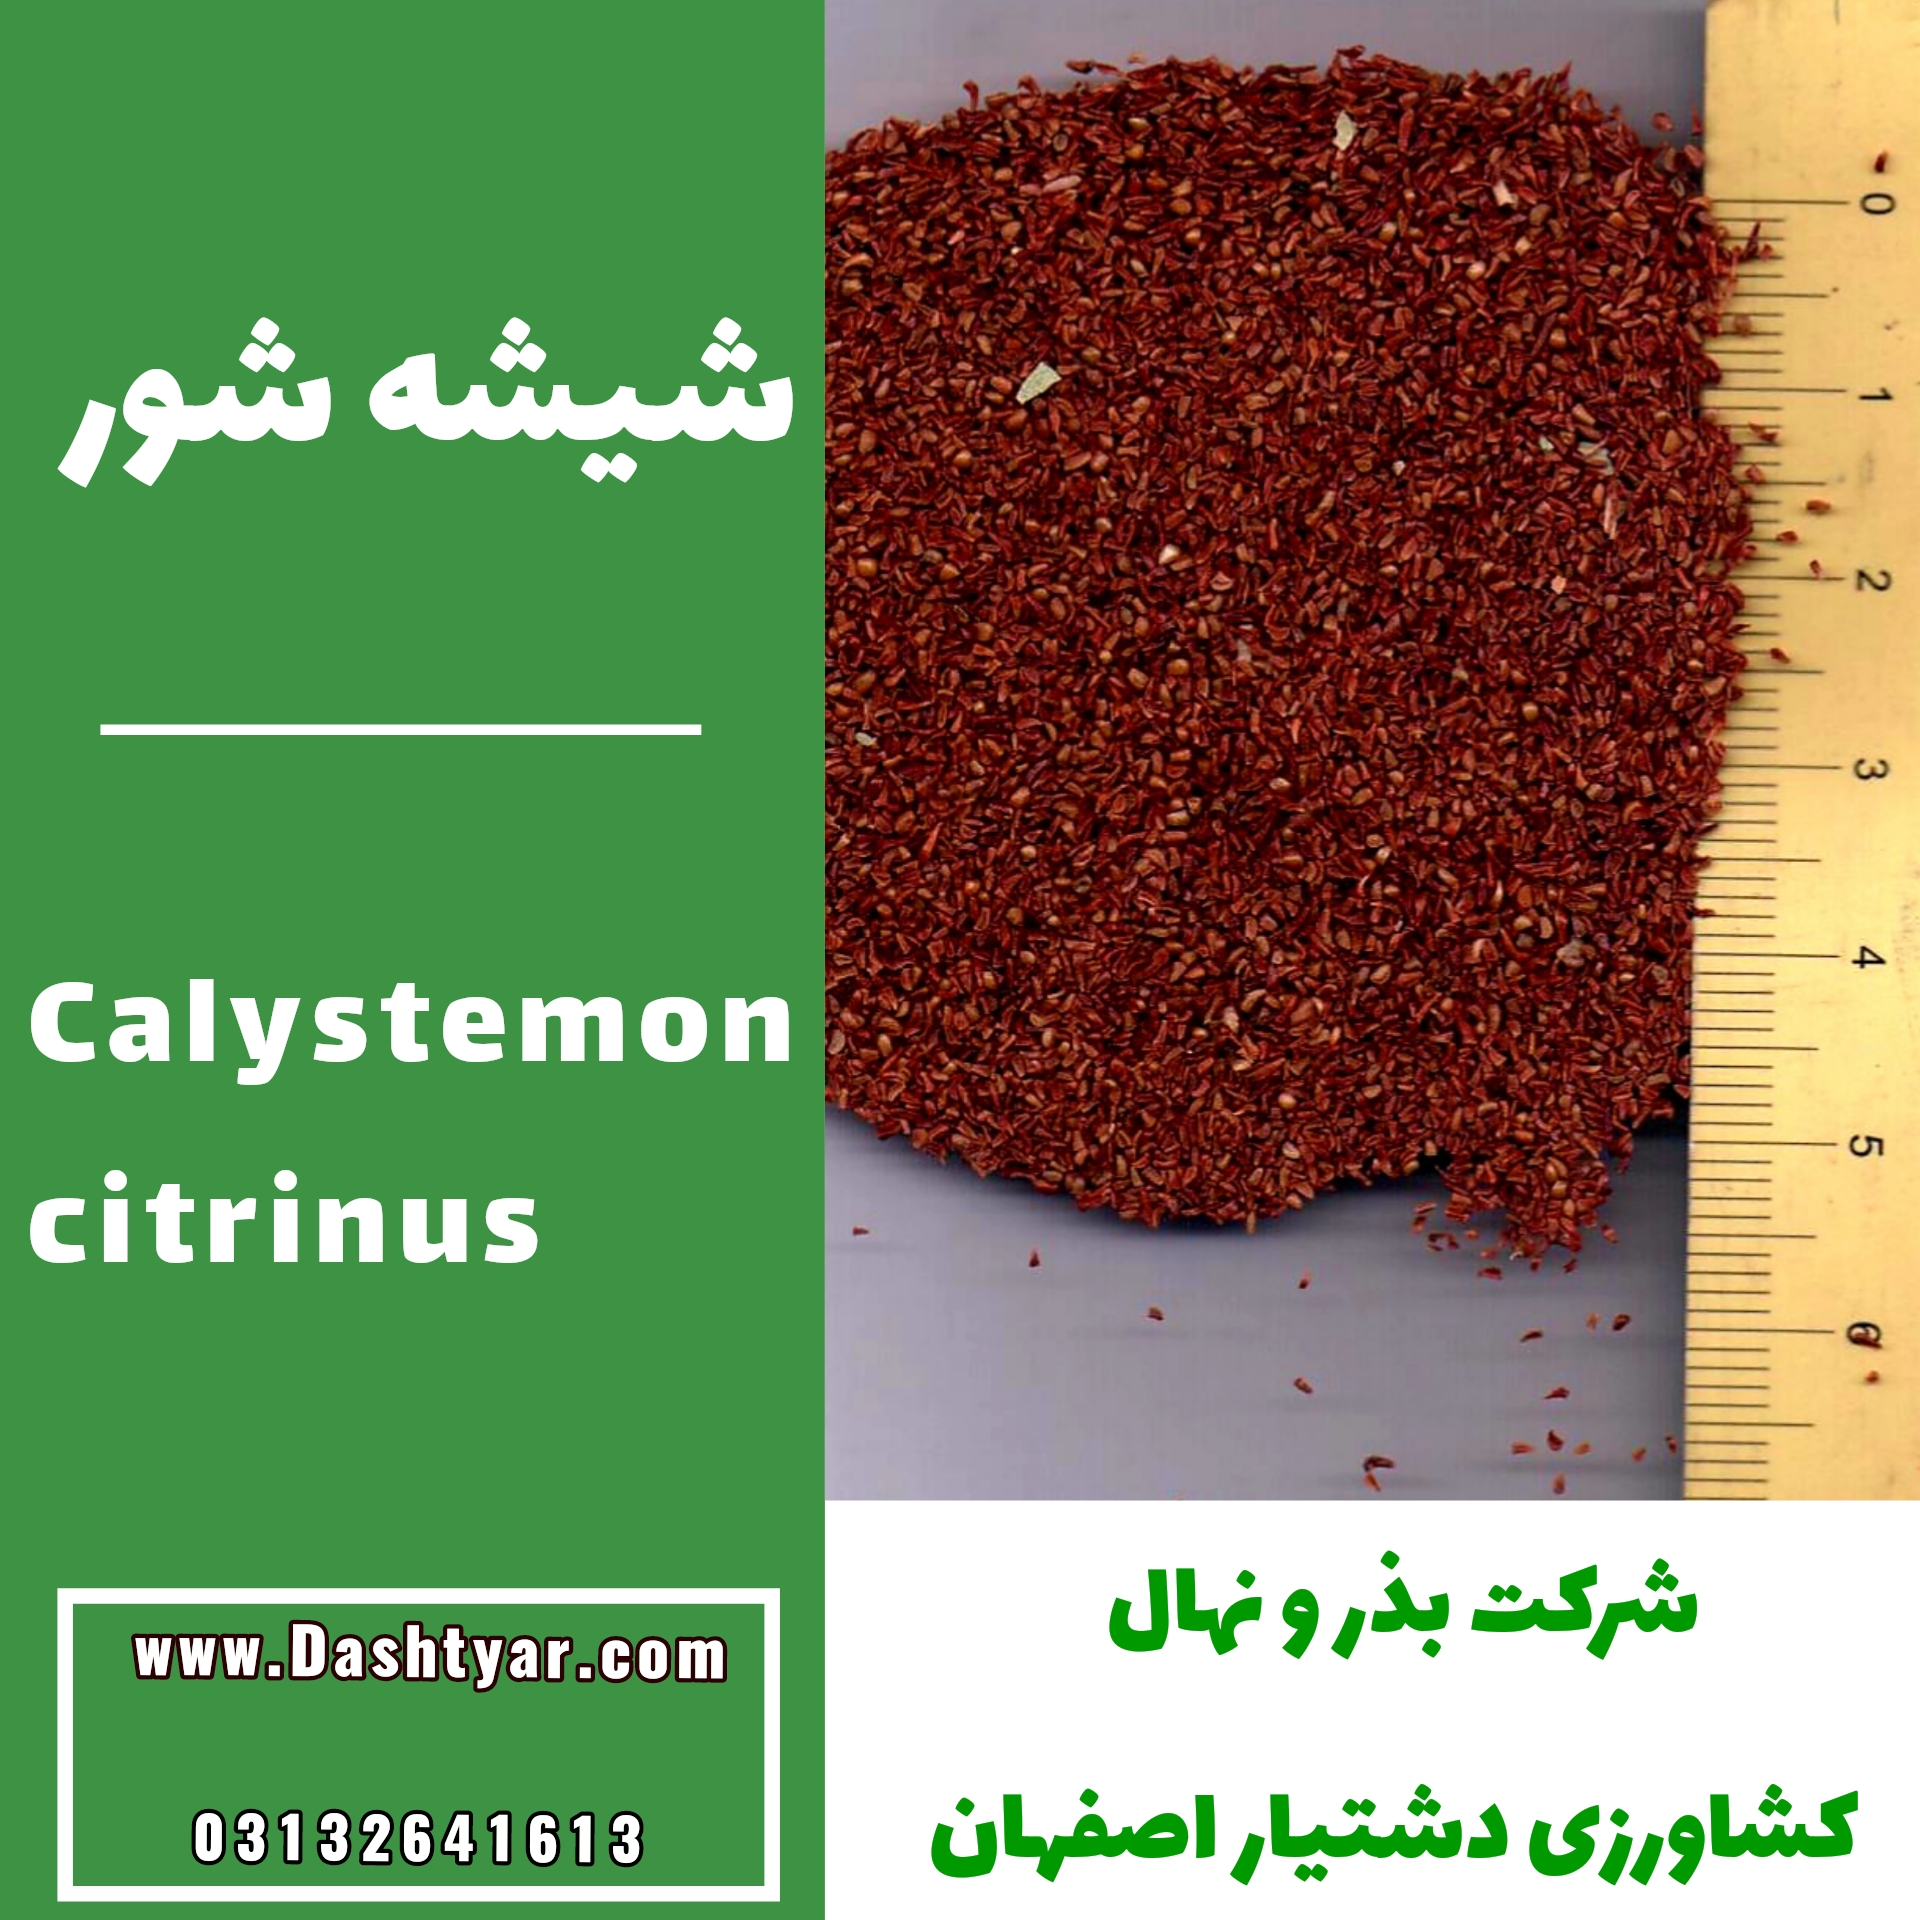 بذر شیشه شور(Calystemon citrinus)